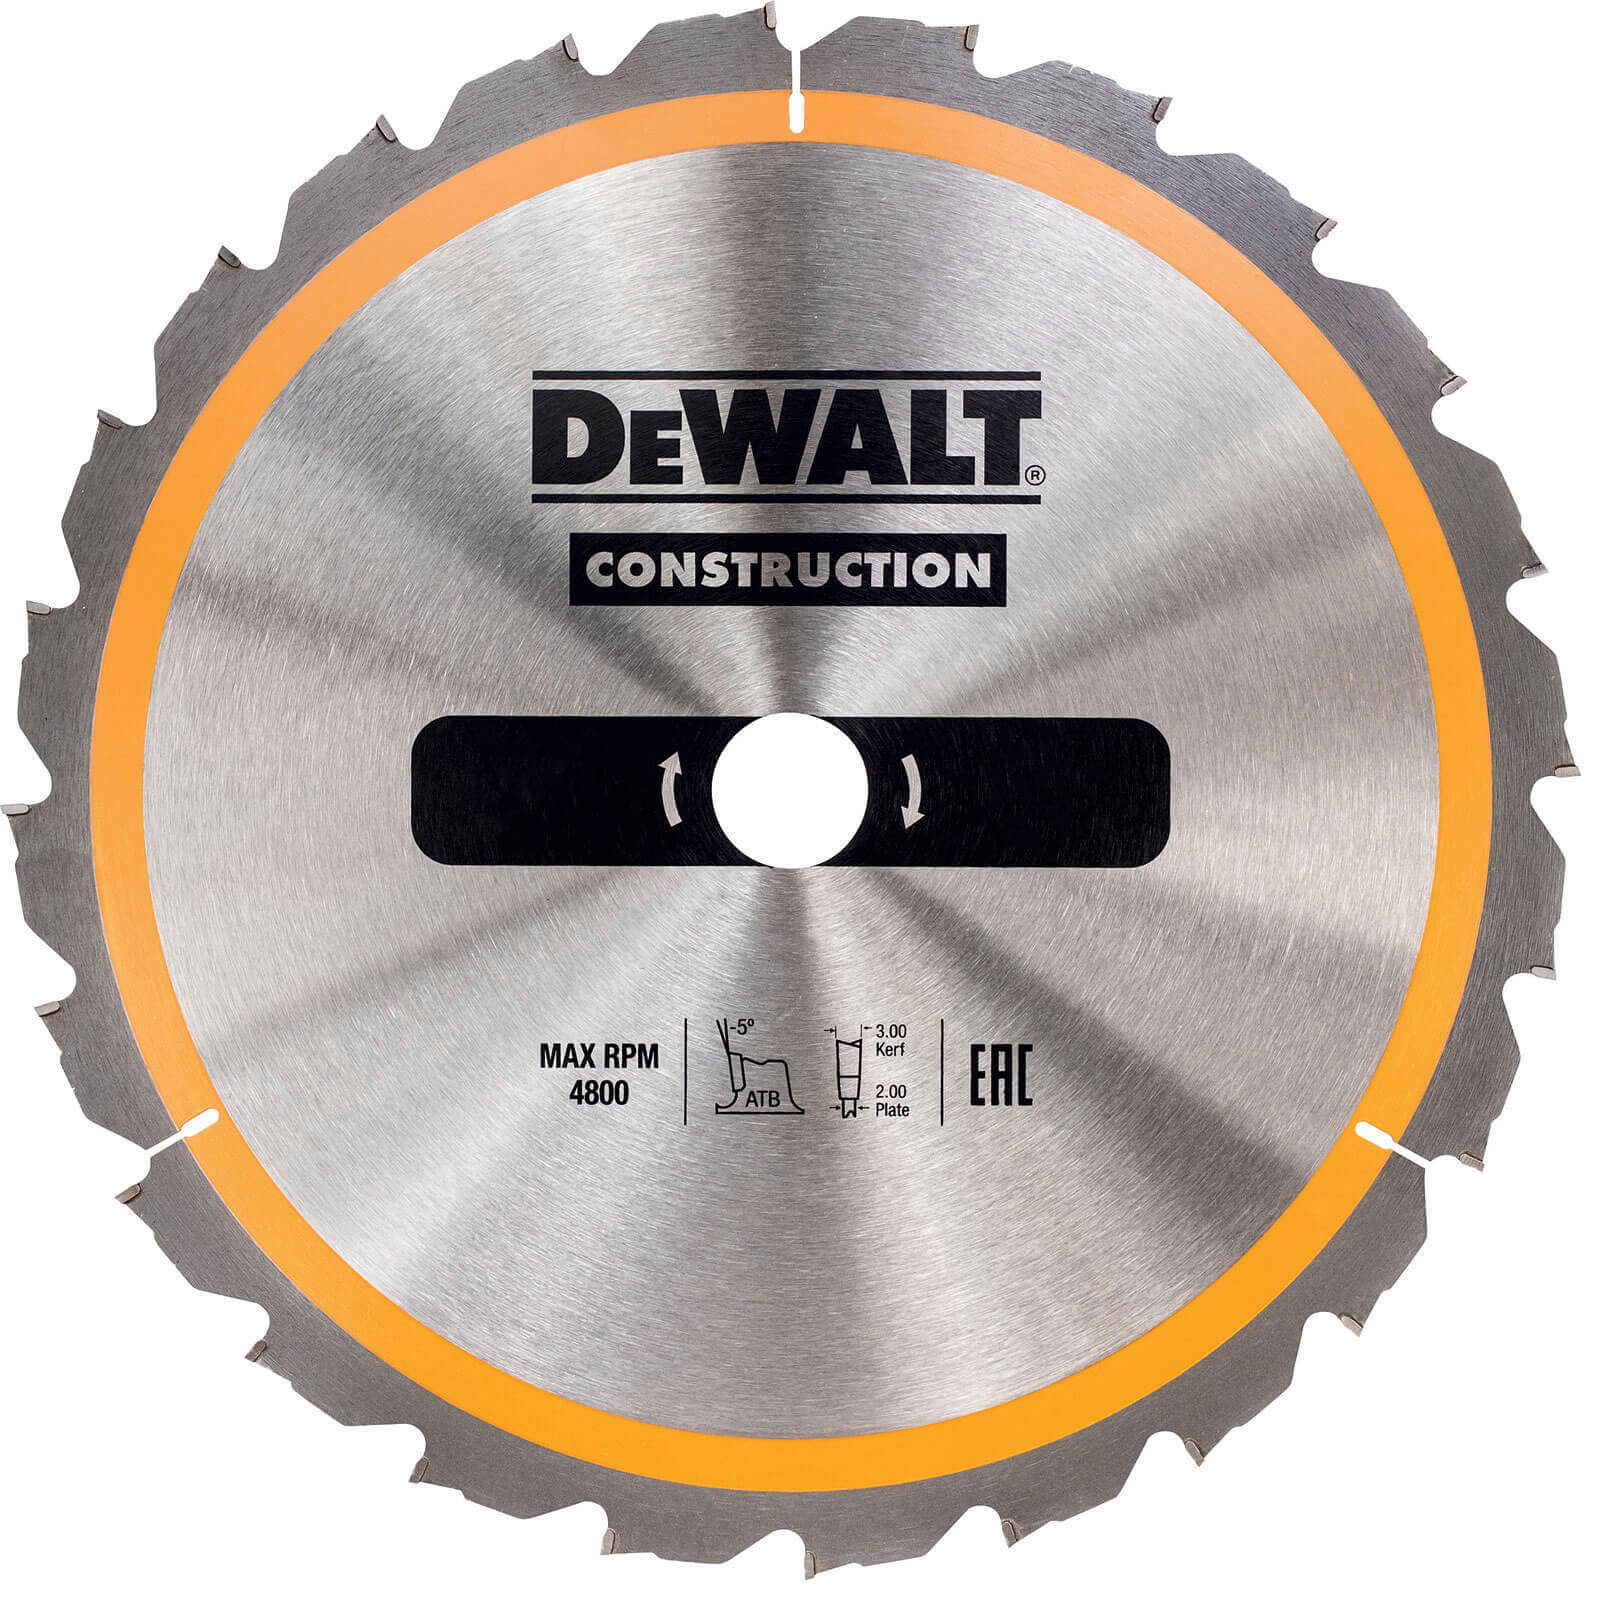 Photo of Dewalt Construction Circular Saw Blade 190mm 18t 30mm